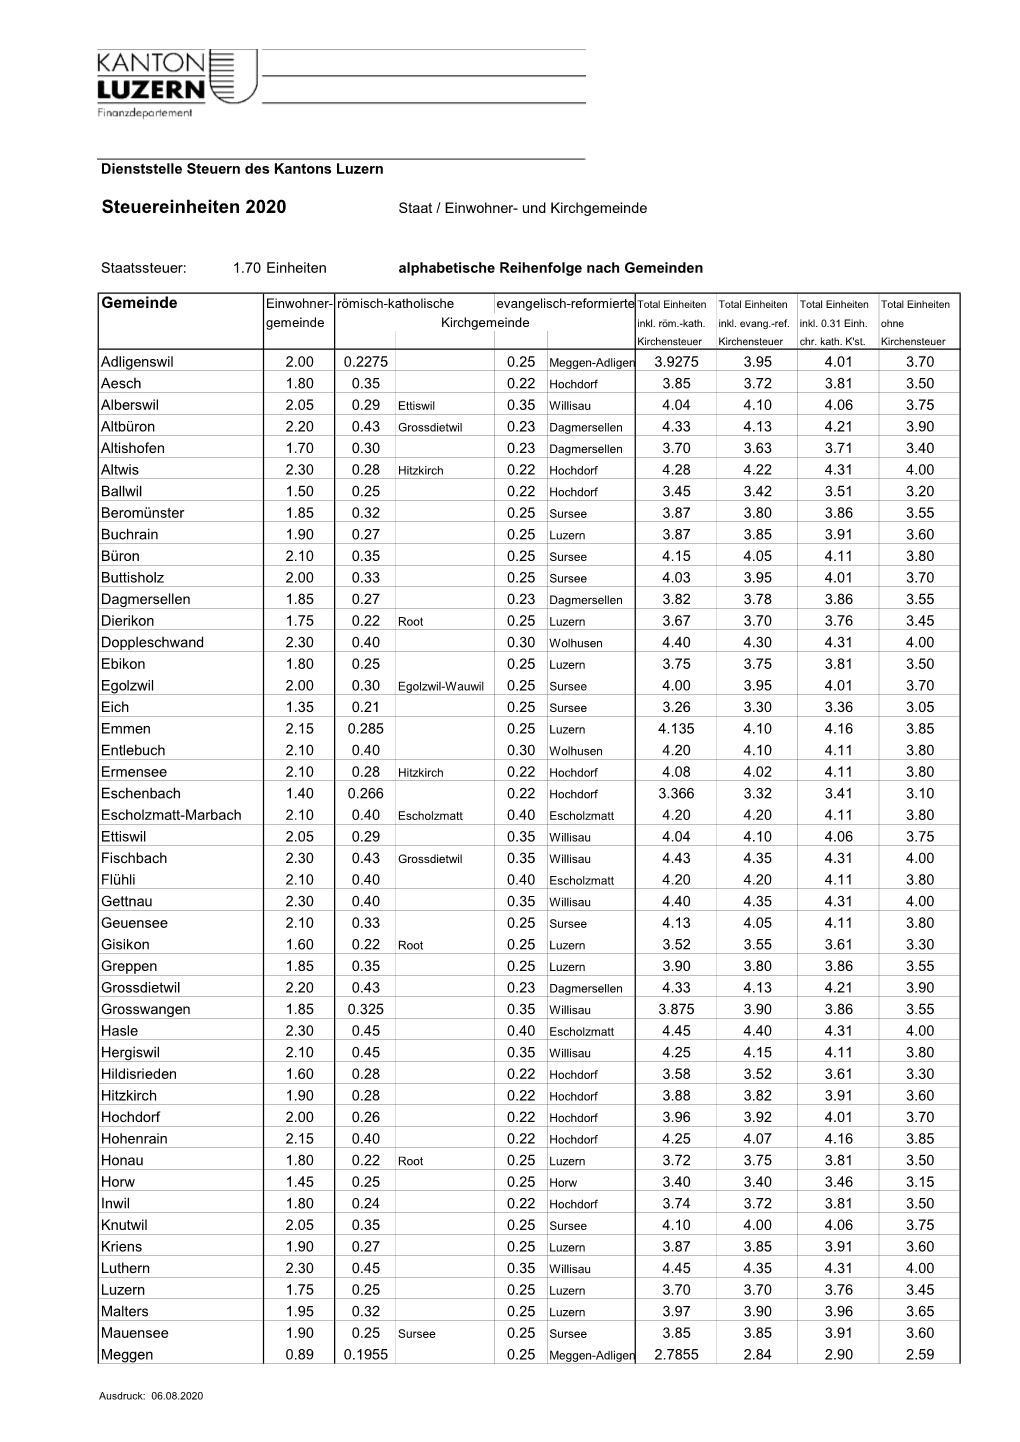 Steuereinheiten 2020 Staat / Einwohner- Und Kirchgemeinde